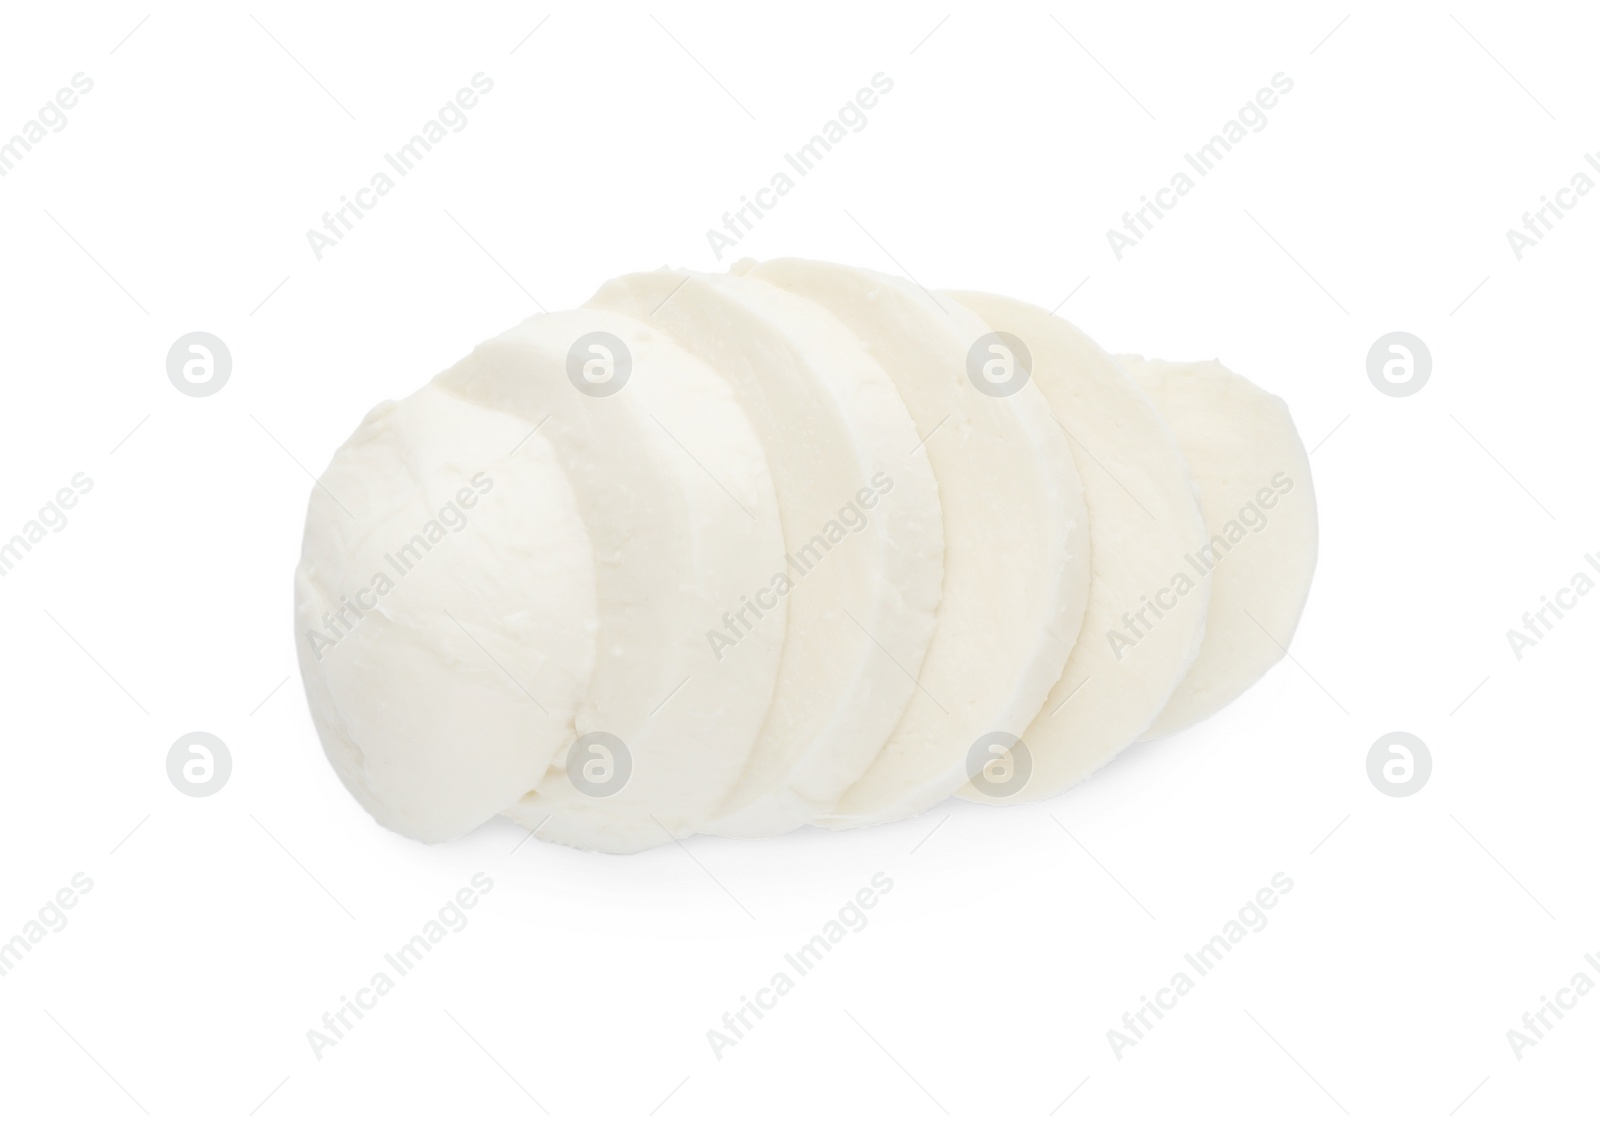 Photo of Delicious mozzarella cheese slices on white background, top view